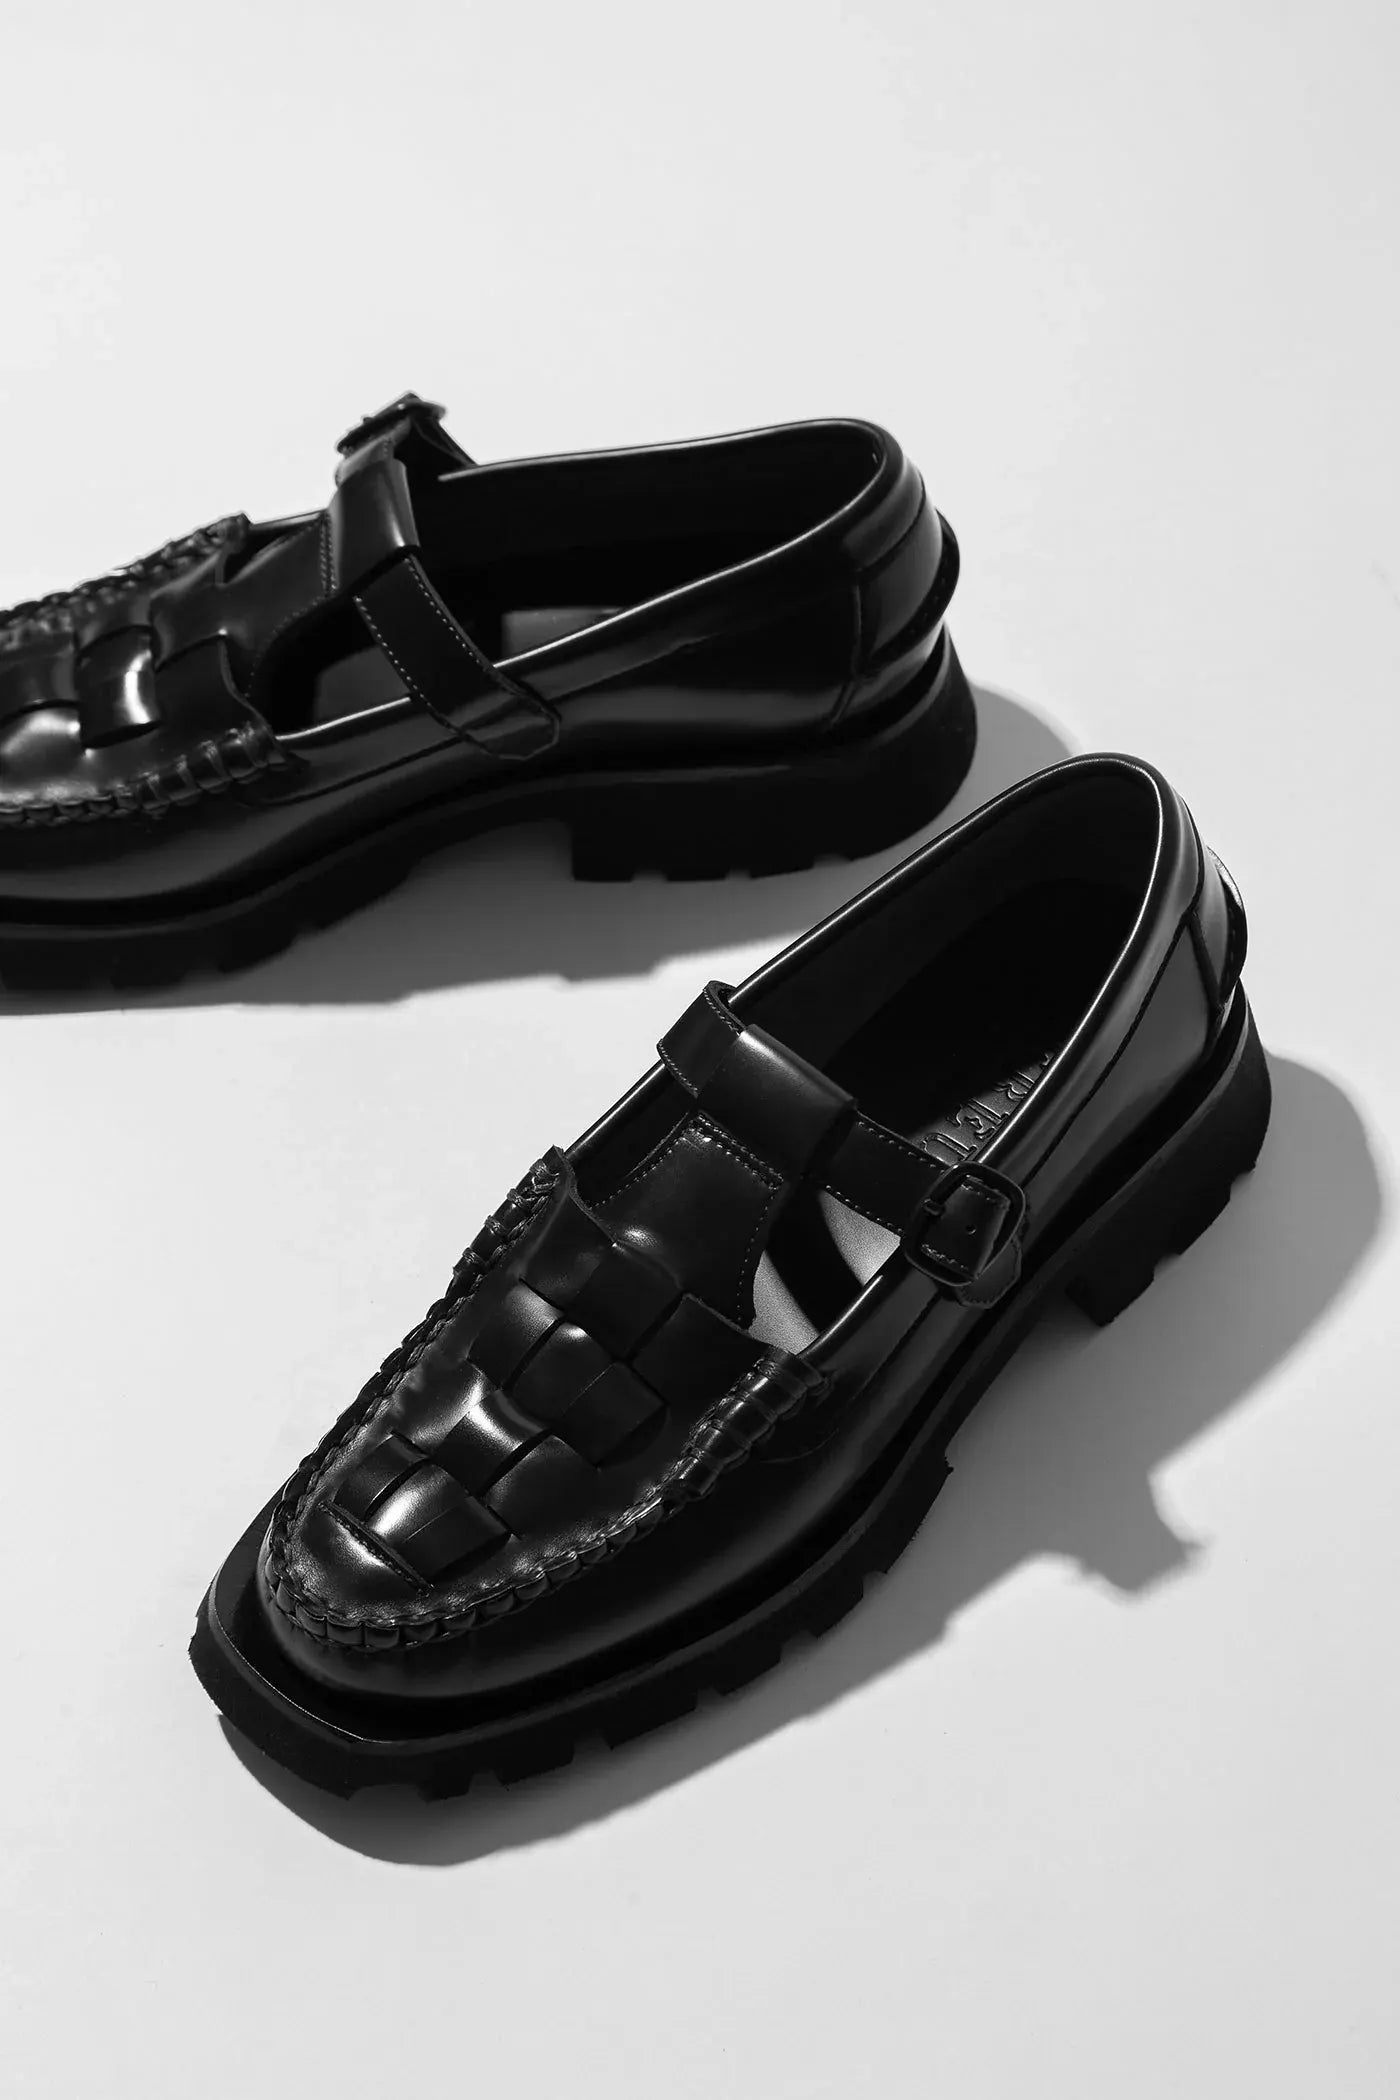 Soller Sport loafers, black